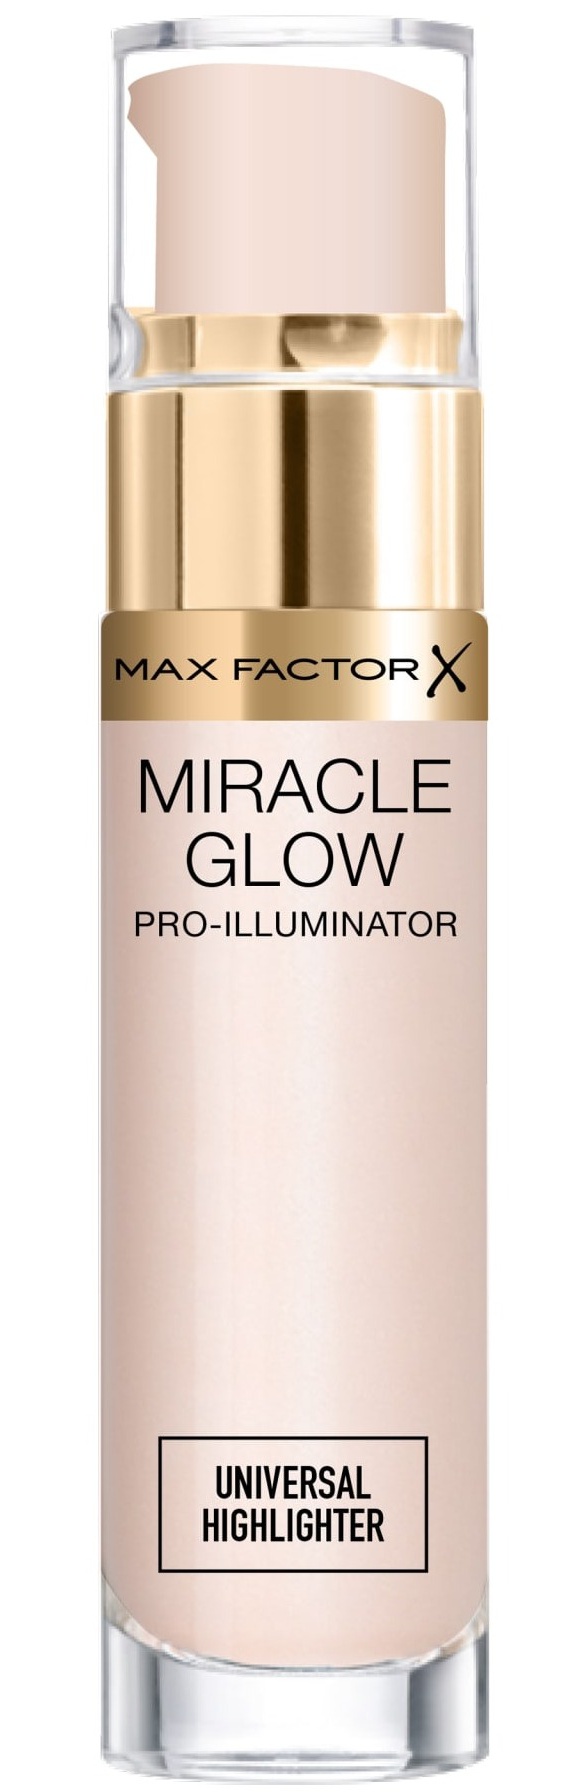 Max Factor Miracle Glow Pro Illuminator